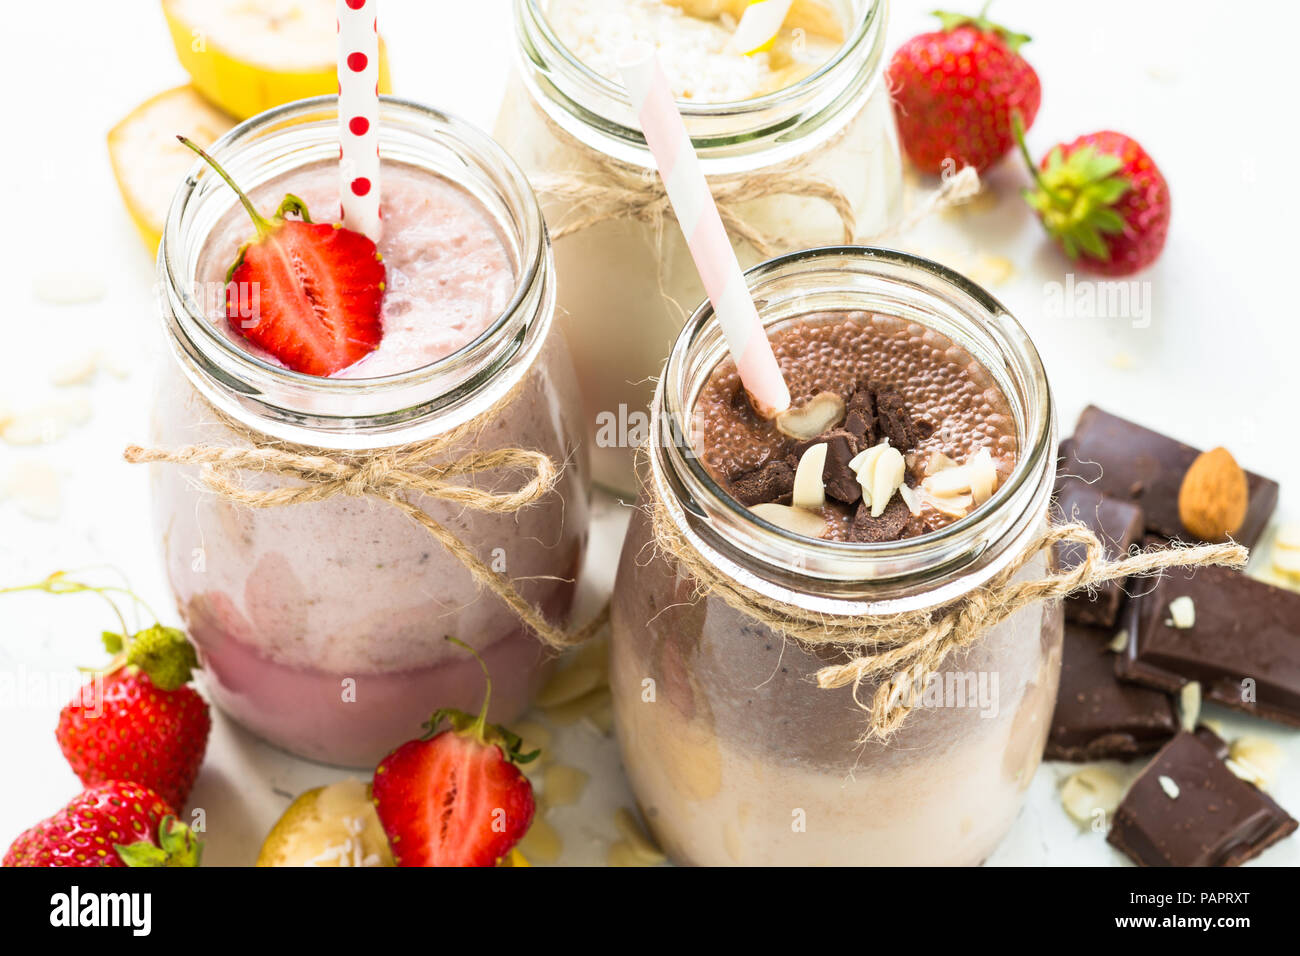 Ensemble de milkshake en pots. Banane Chocolat et Fraise milkshakes avec les écrous et la noix de coco. Dessert d'été. Alimentation saine. Banque D'Images